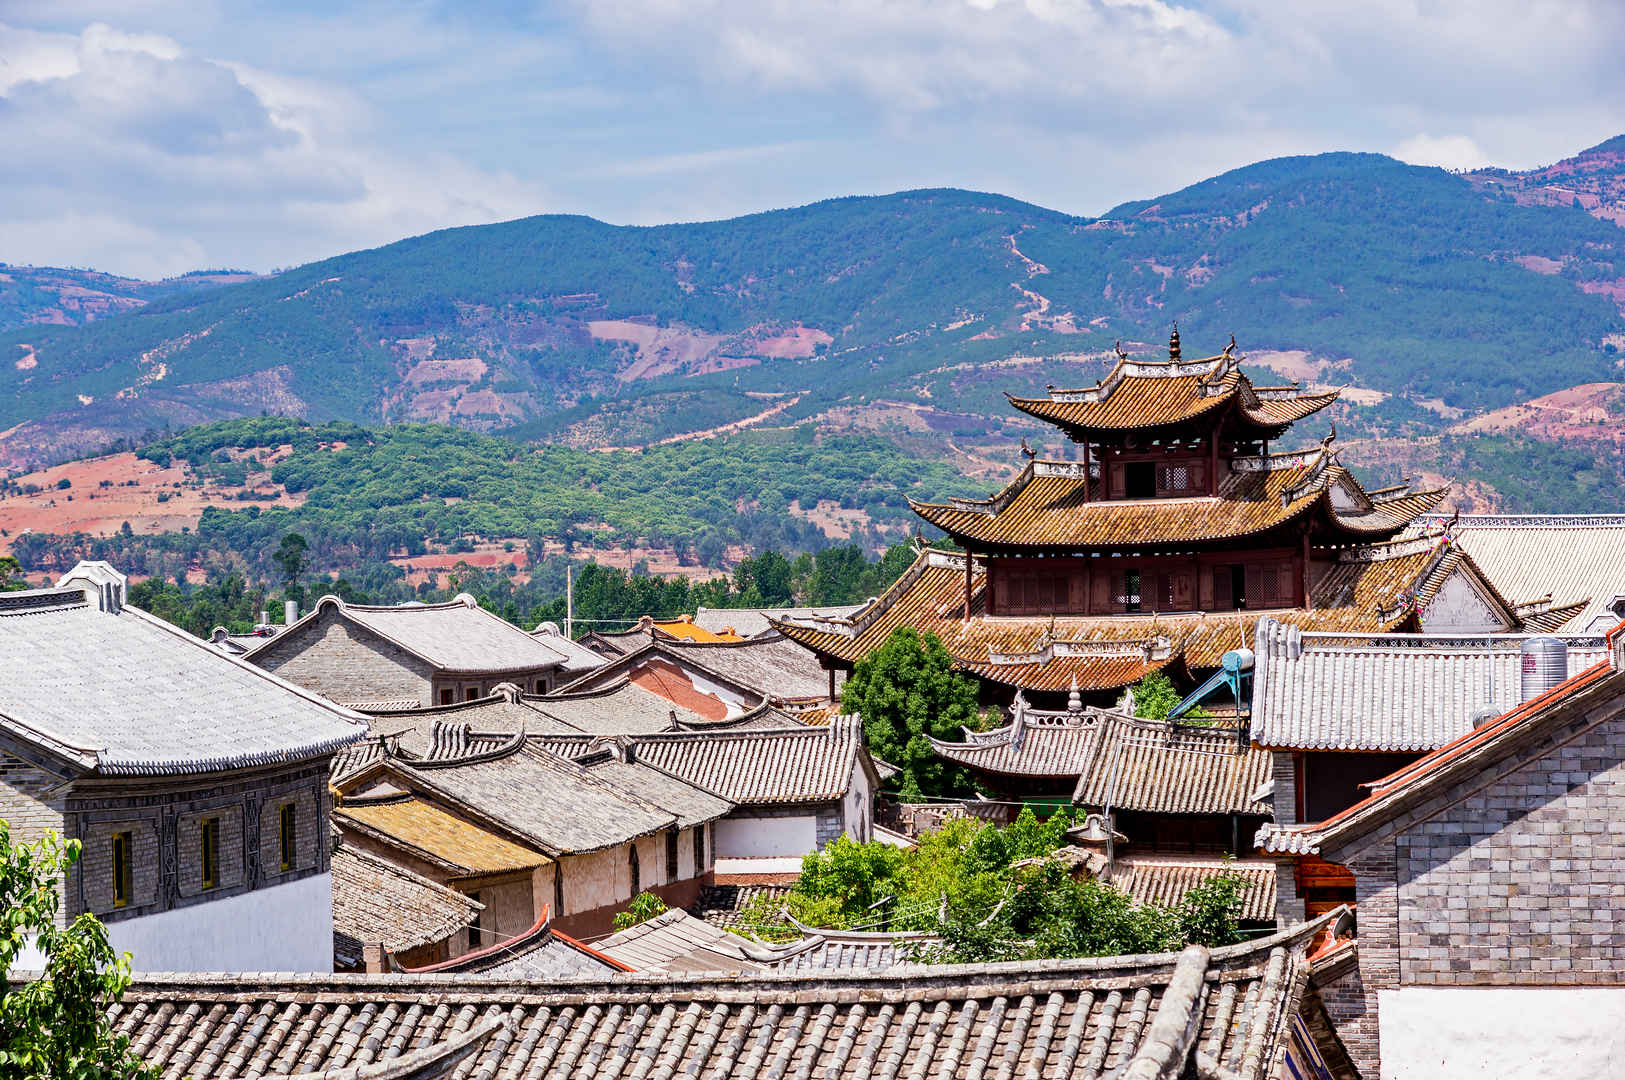 中国传统平铺屋顶特色建筑顶视图-